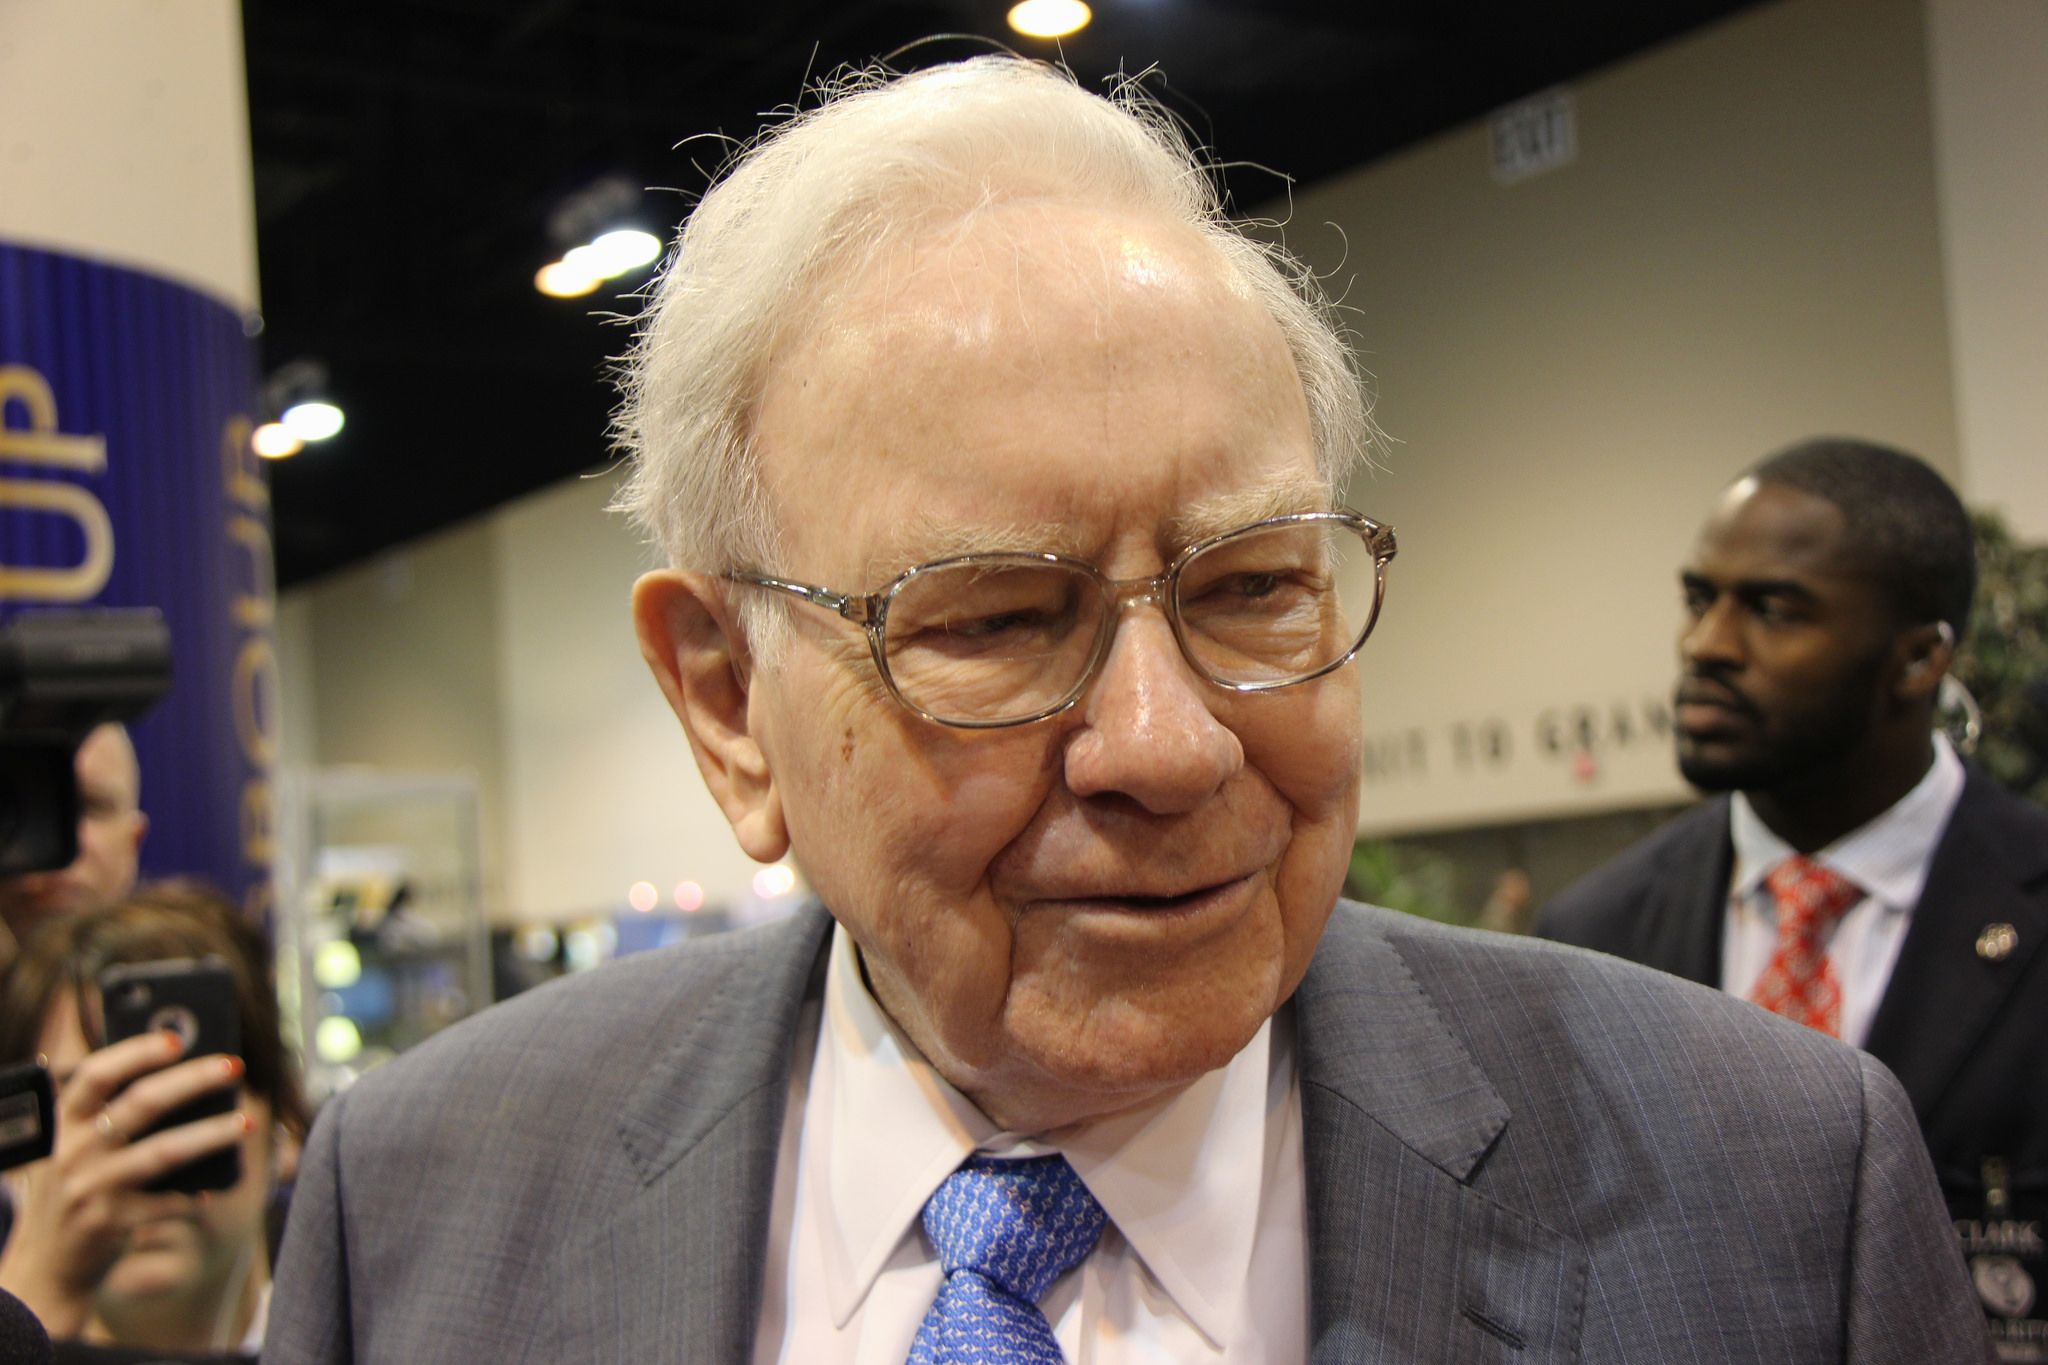 How Warren Buffett Lost $1.5 Billion: A Paramount Investment Gone Awry